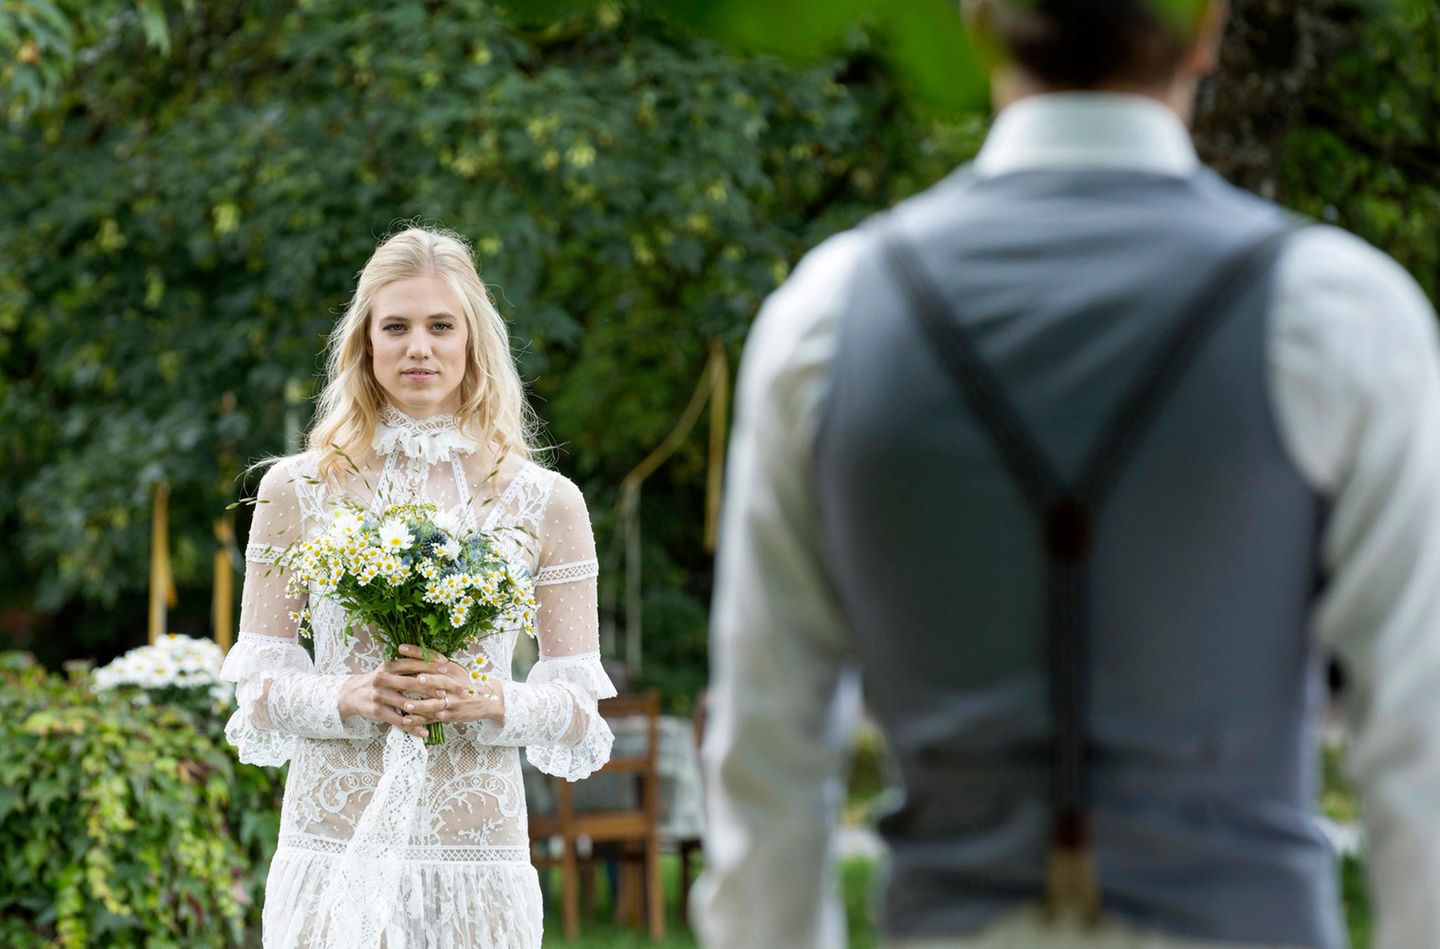 Auf diesen Moment hat Viktor lange gewartet: Seine große Liebe Alicia schreitet zum Altar, um ihn zu heiraten